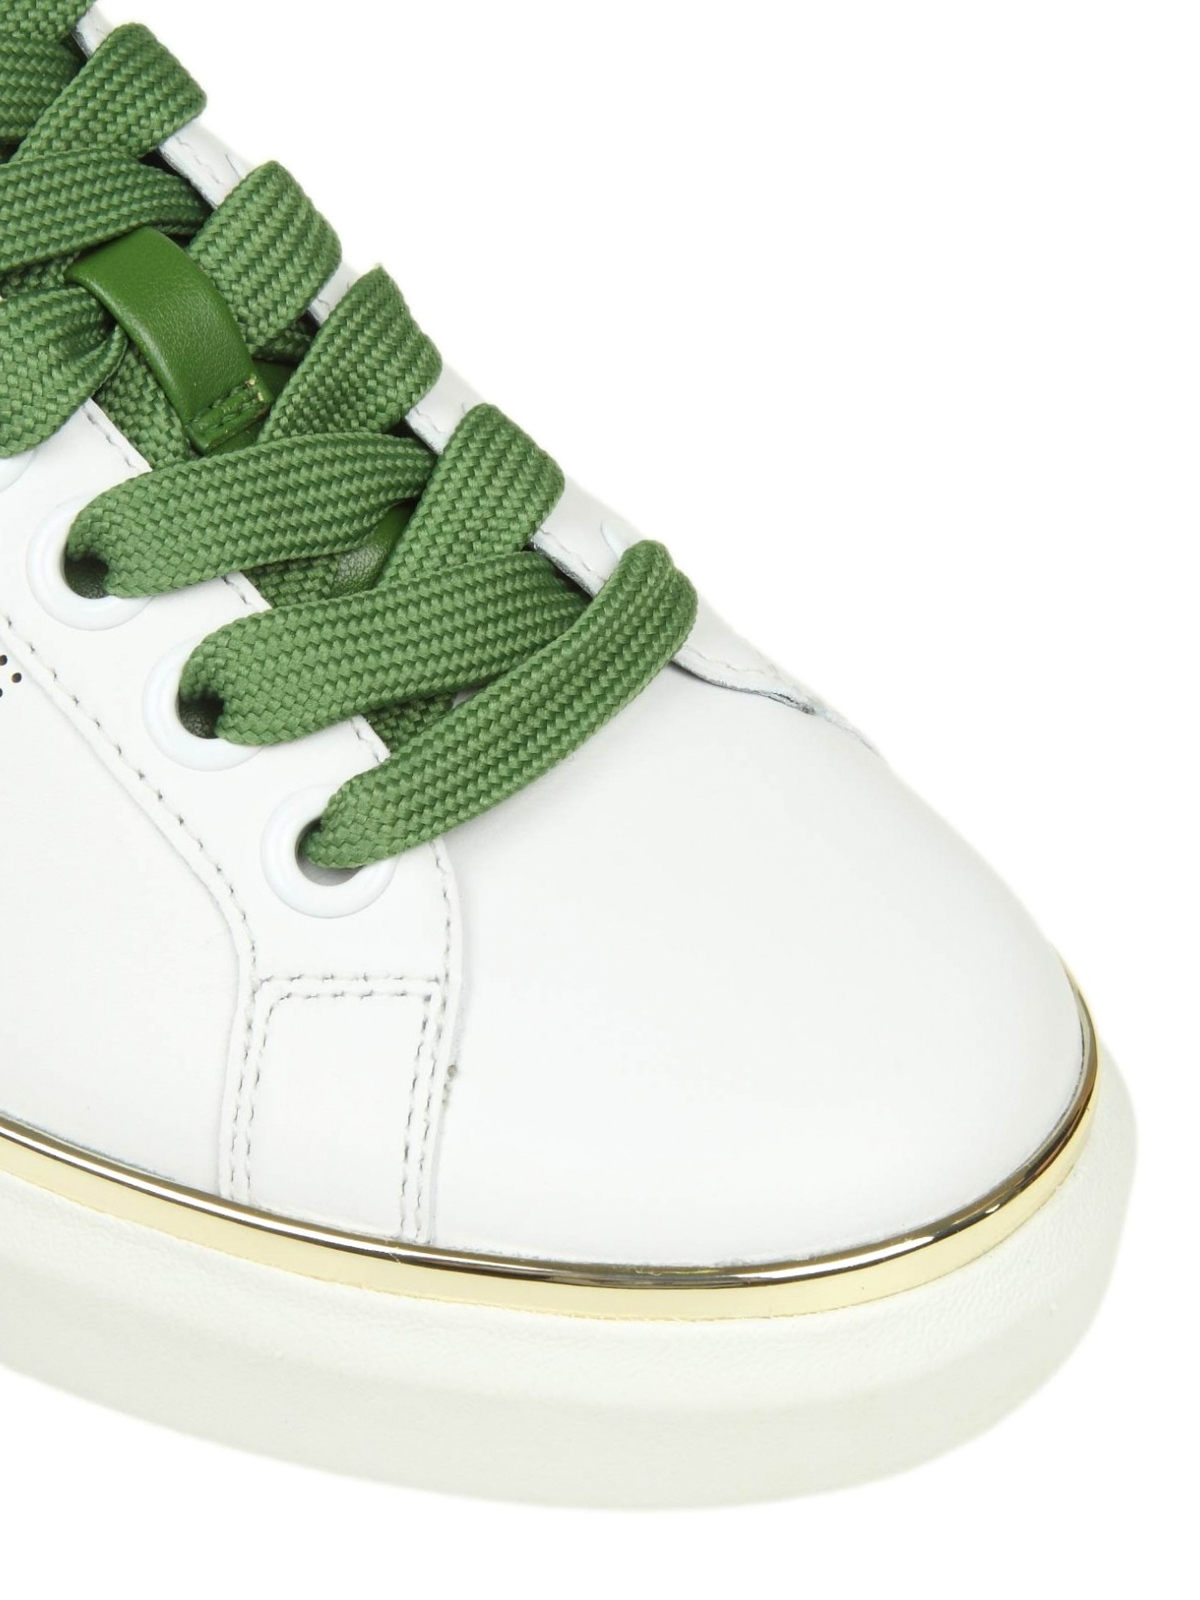 michael kors green sneakers